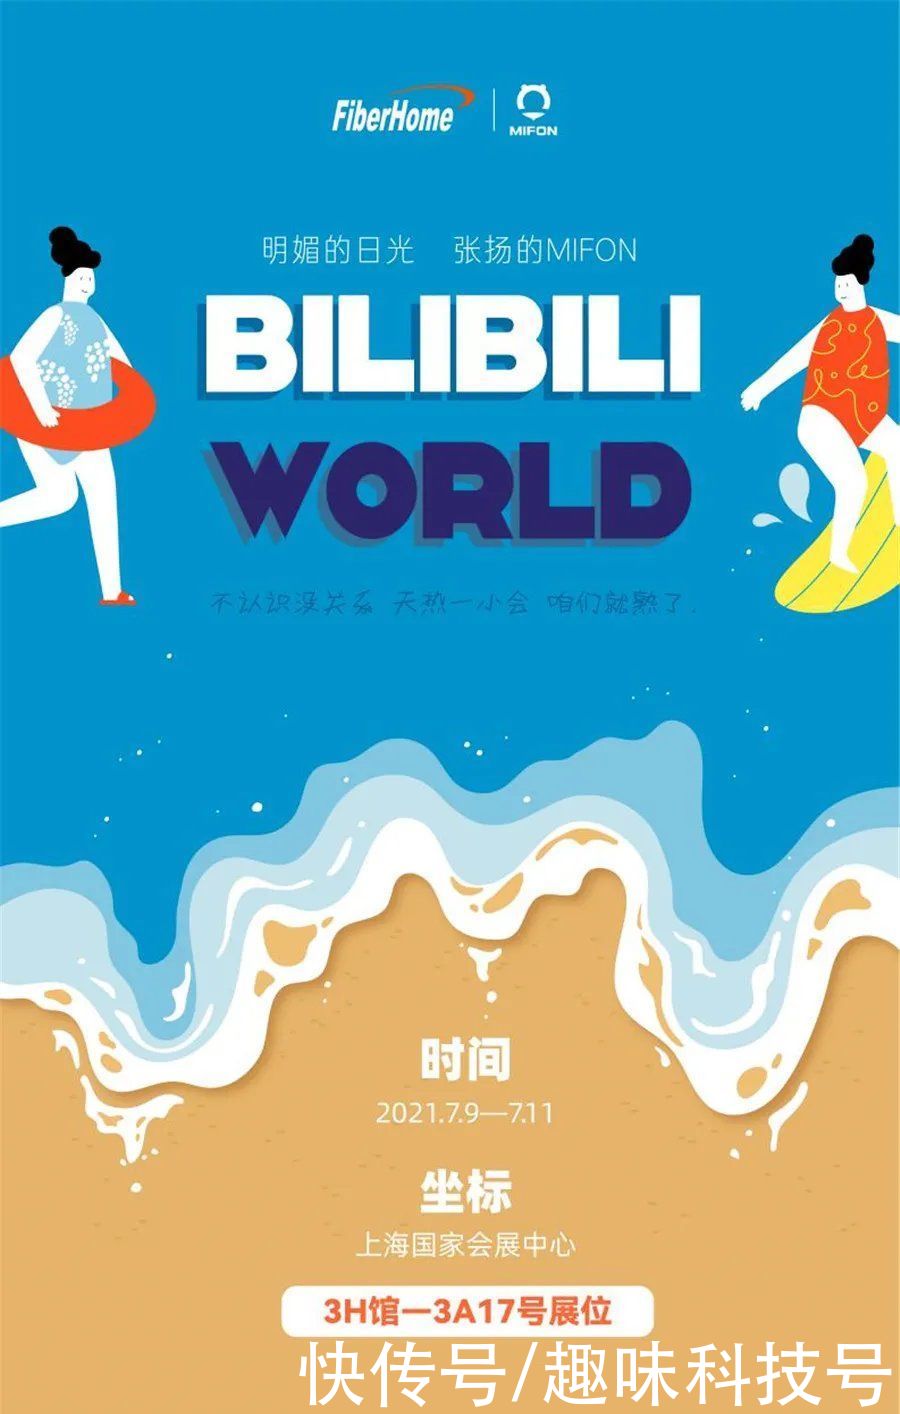 奇遇|BlibliWorld开幕 烽火MIFON邀你一起尽享奇遇